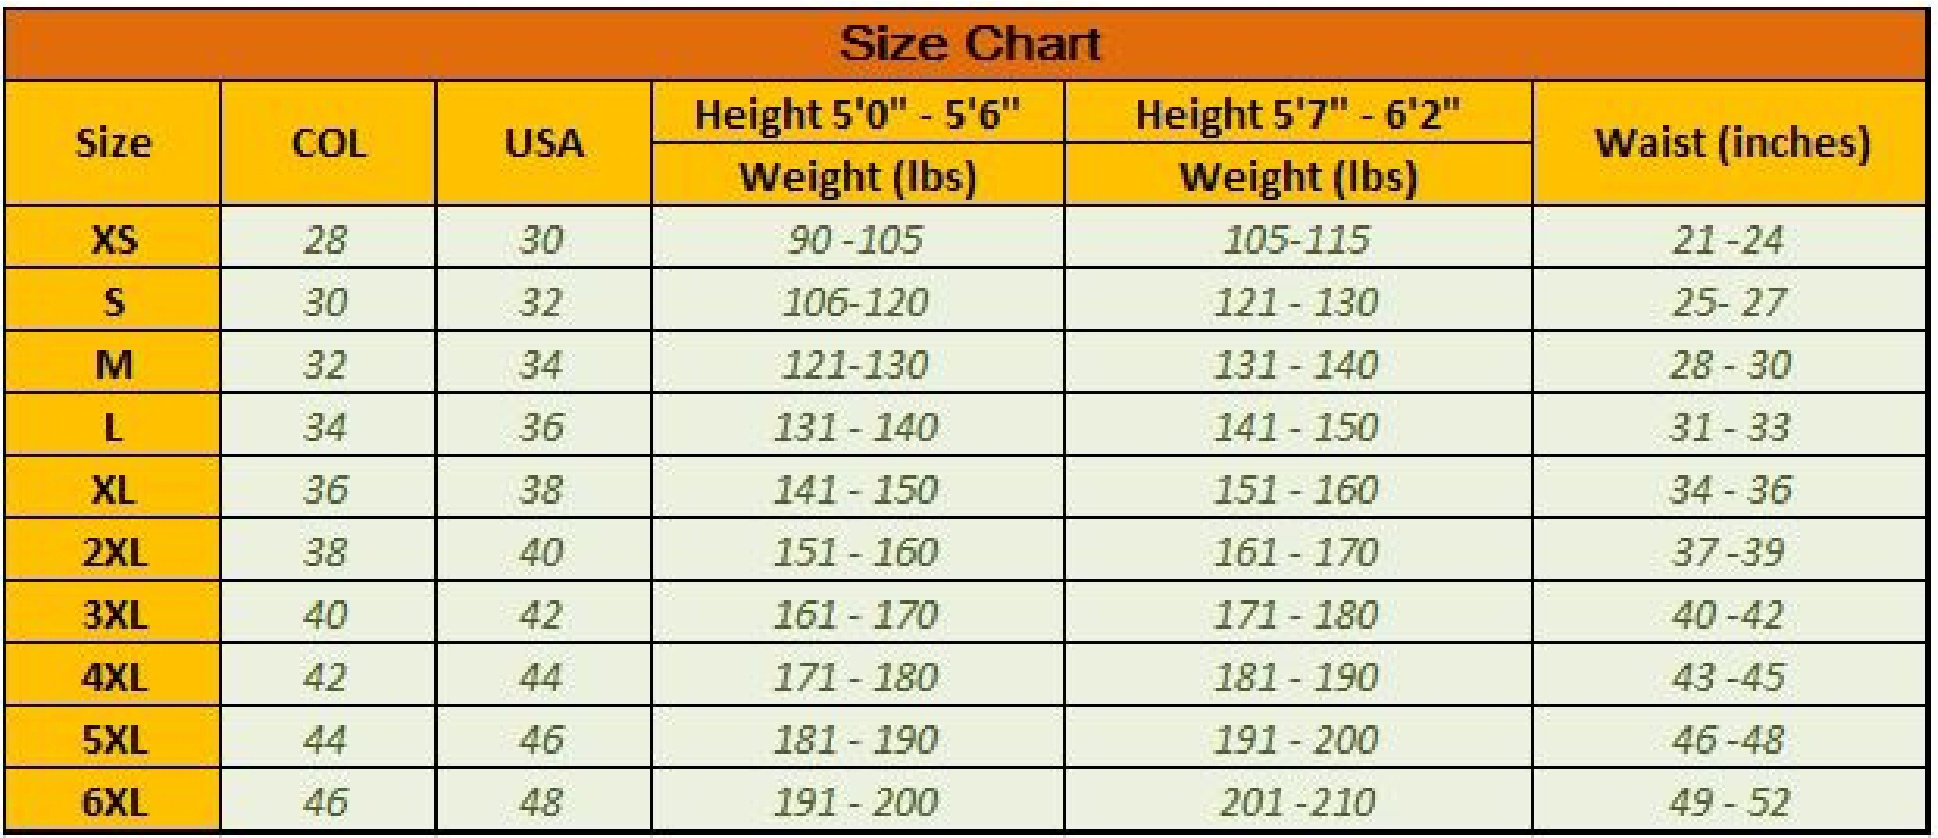 Height Weight Waist Size Chart